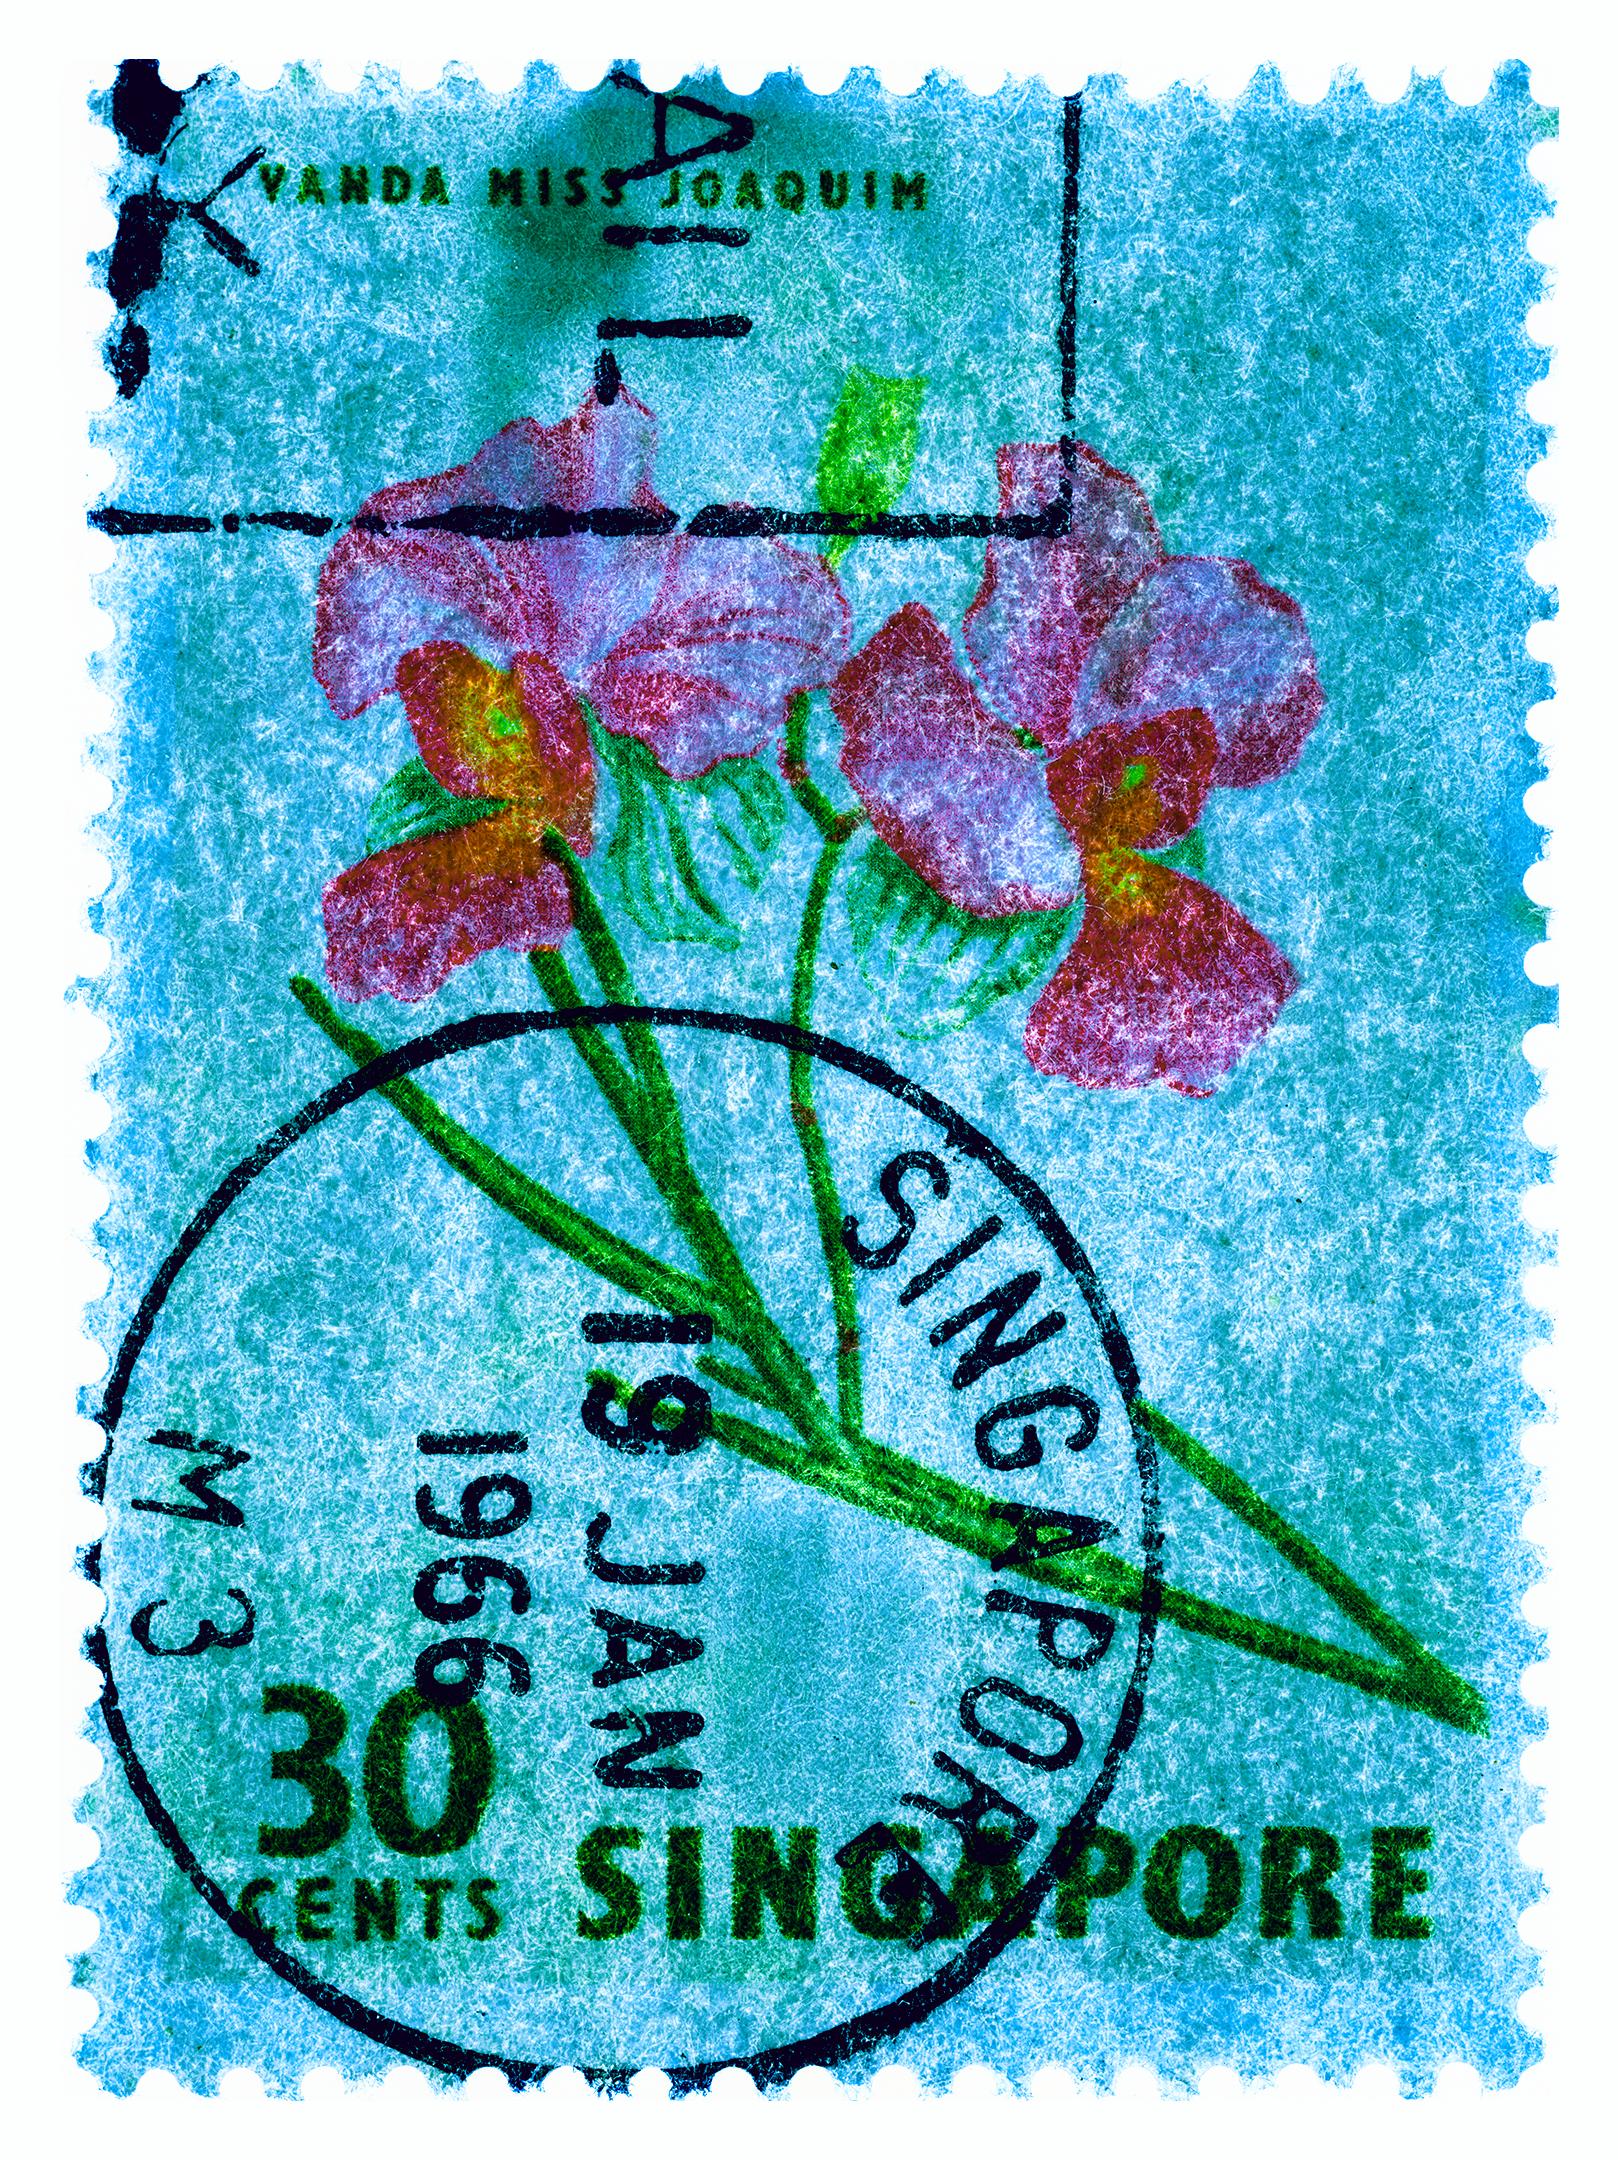 Collection de timbres de Singapour, 30c Singapour Quatre - Photo couleur florale - Conceptuel Print par Heidler & Heeps